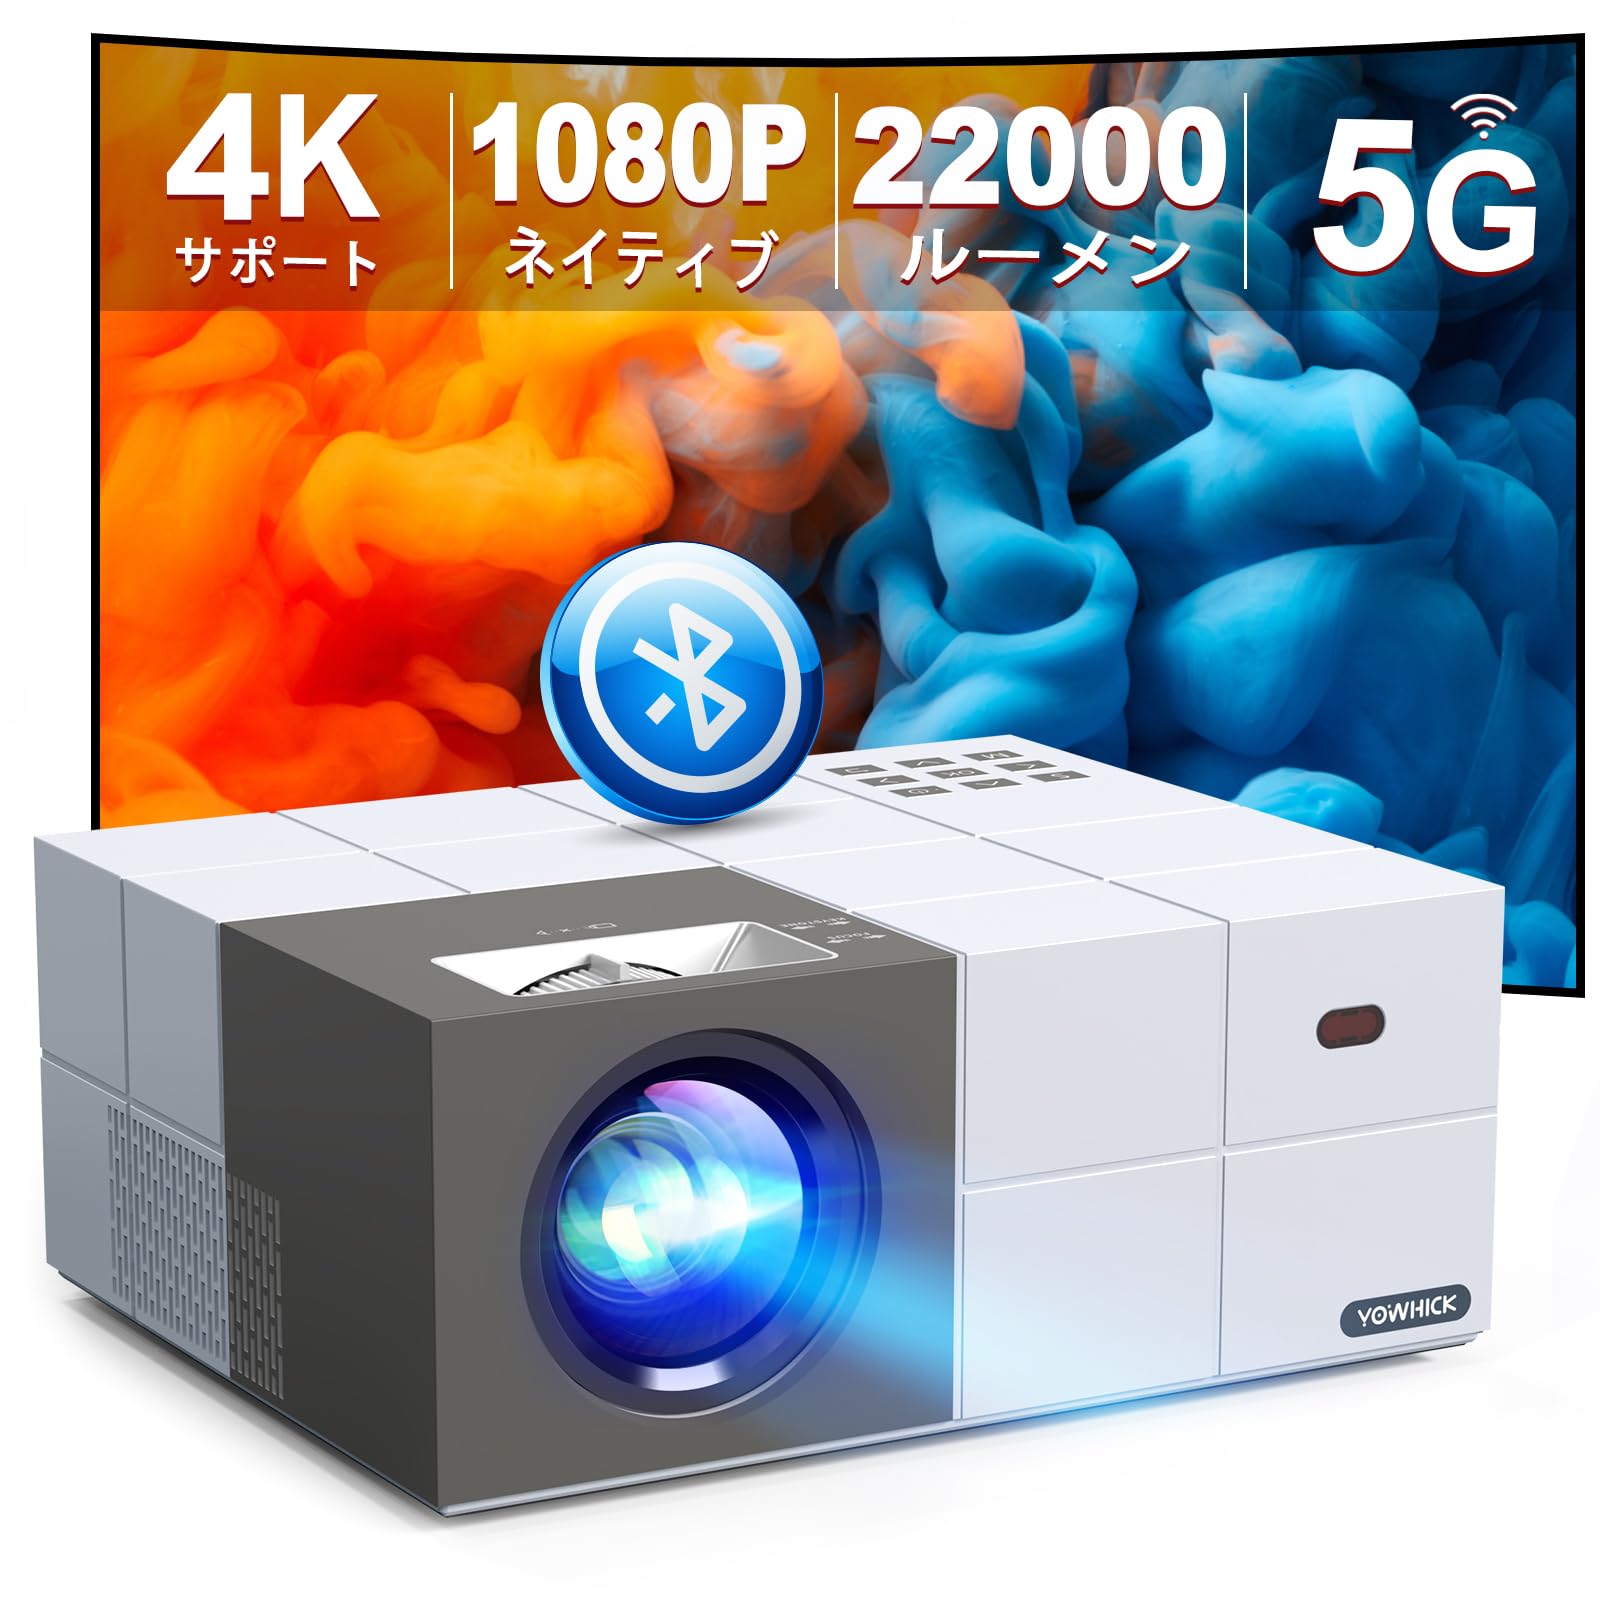 19,000円ポータブル4K 大画面 HD 明るいミニプロジェクター バッテリー付き